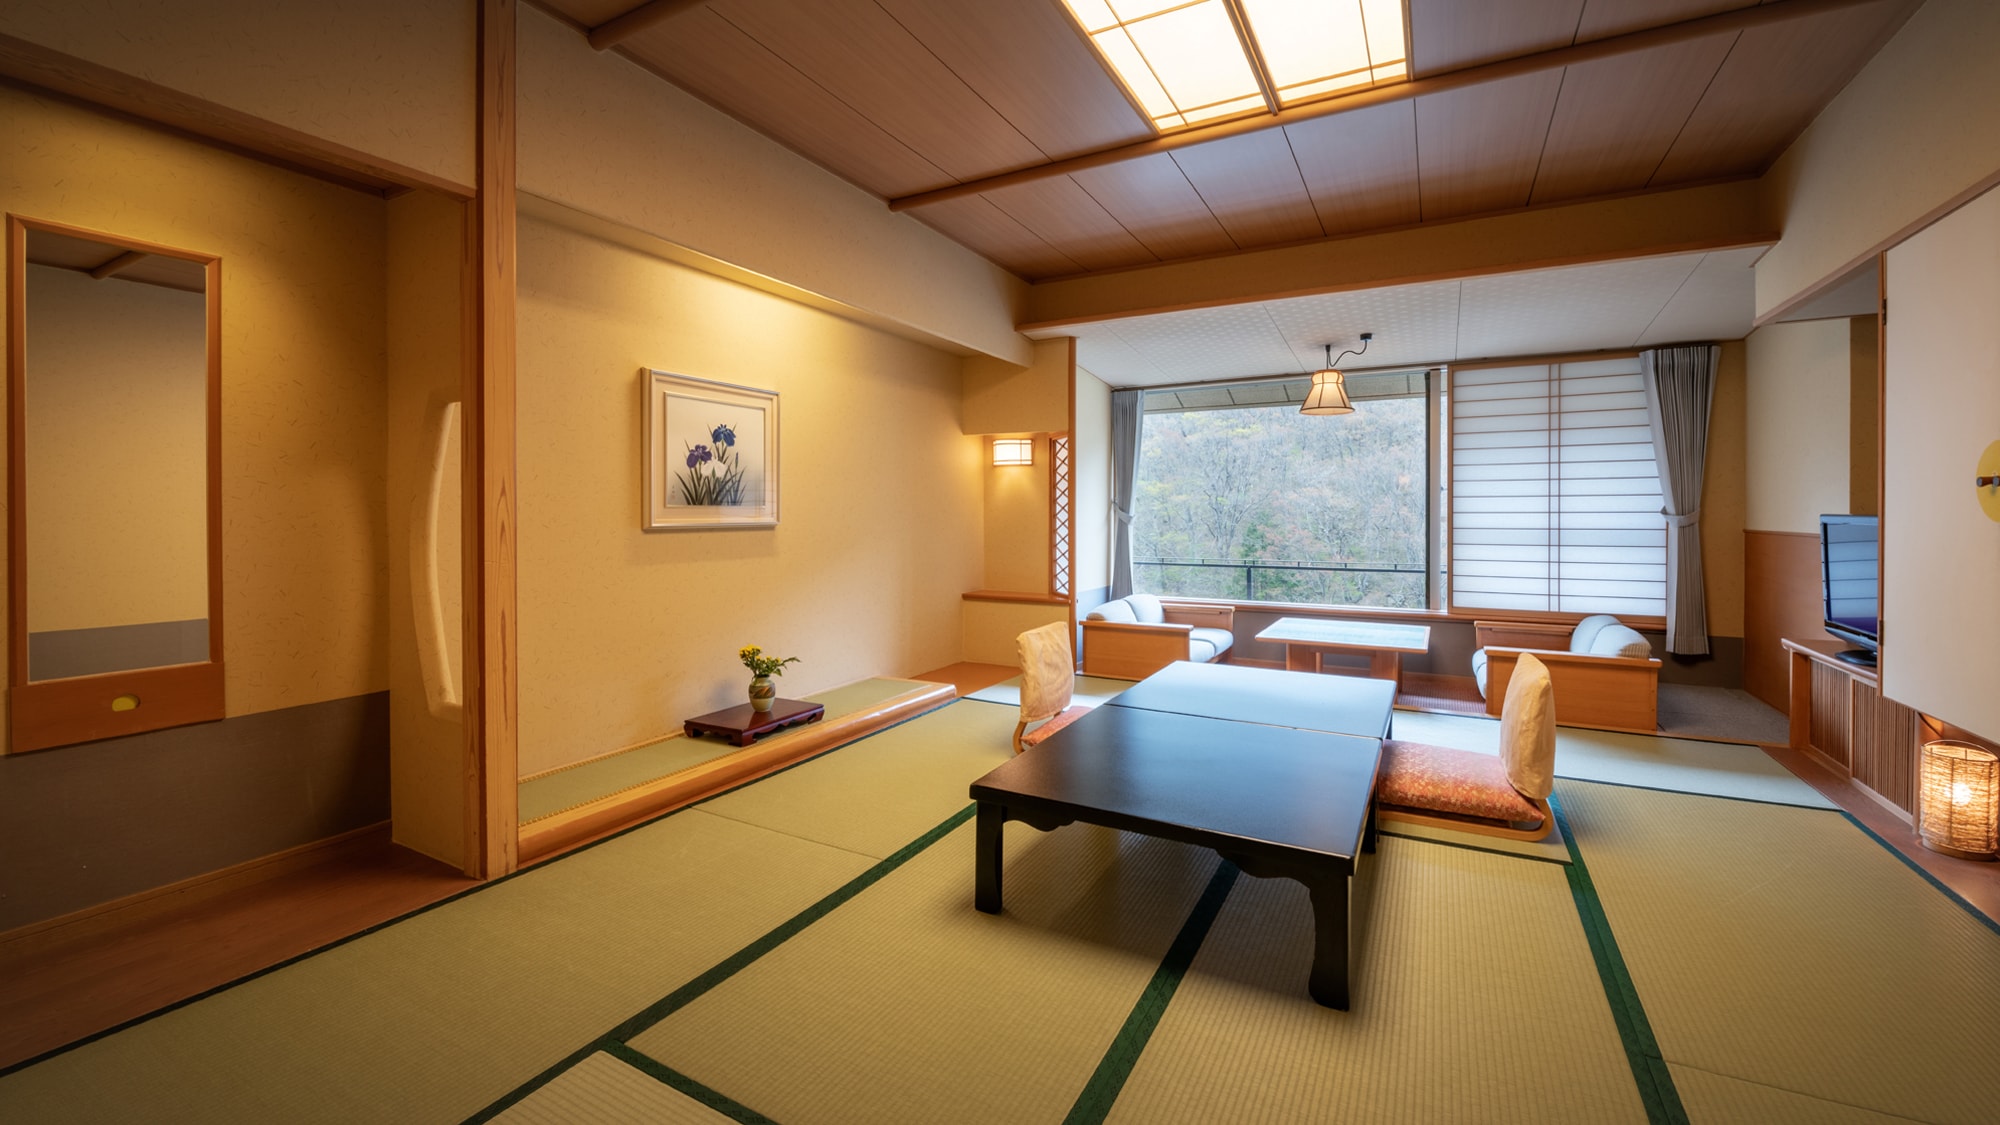 ◆ Shofukan <Japanese-style room 10 tatami mats>